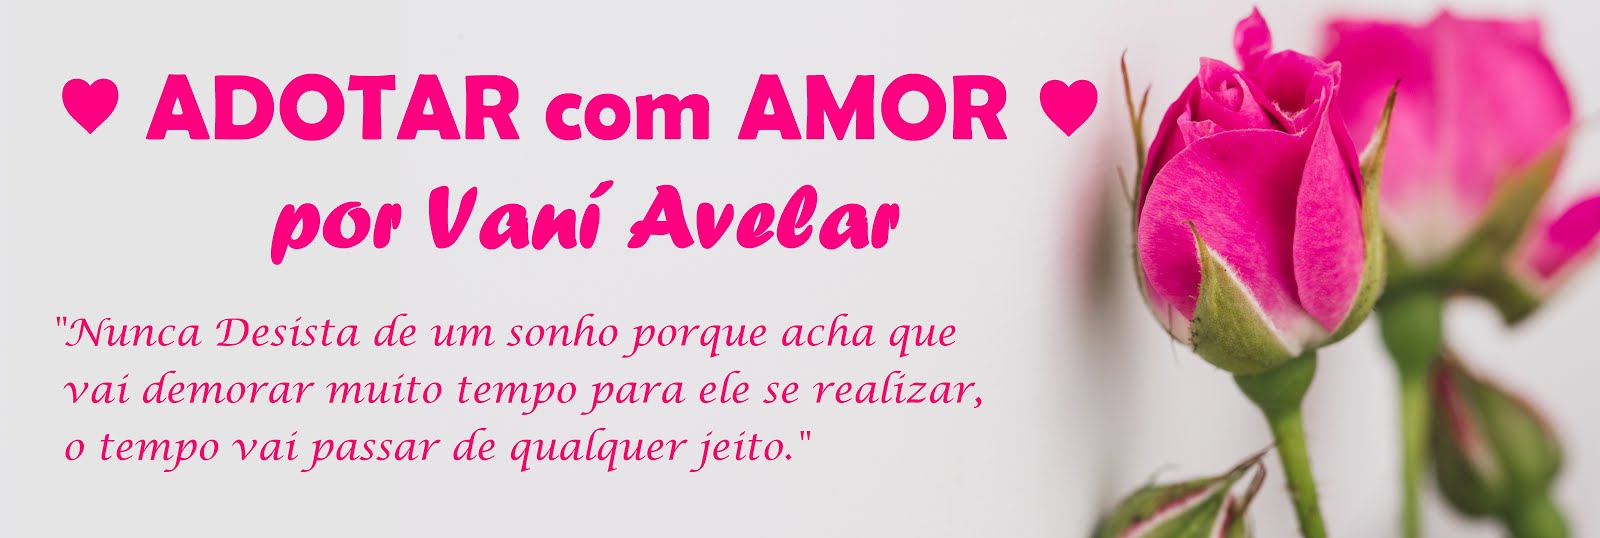 ♥ ADOTAR com AMOR ♥ por Vani Avelar